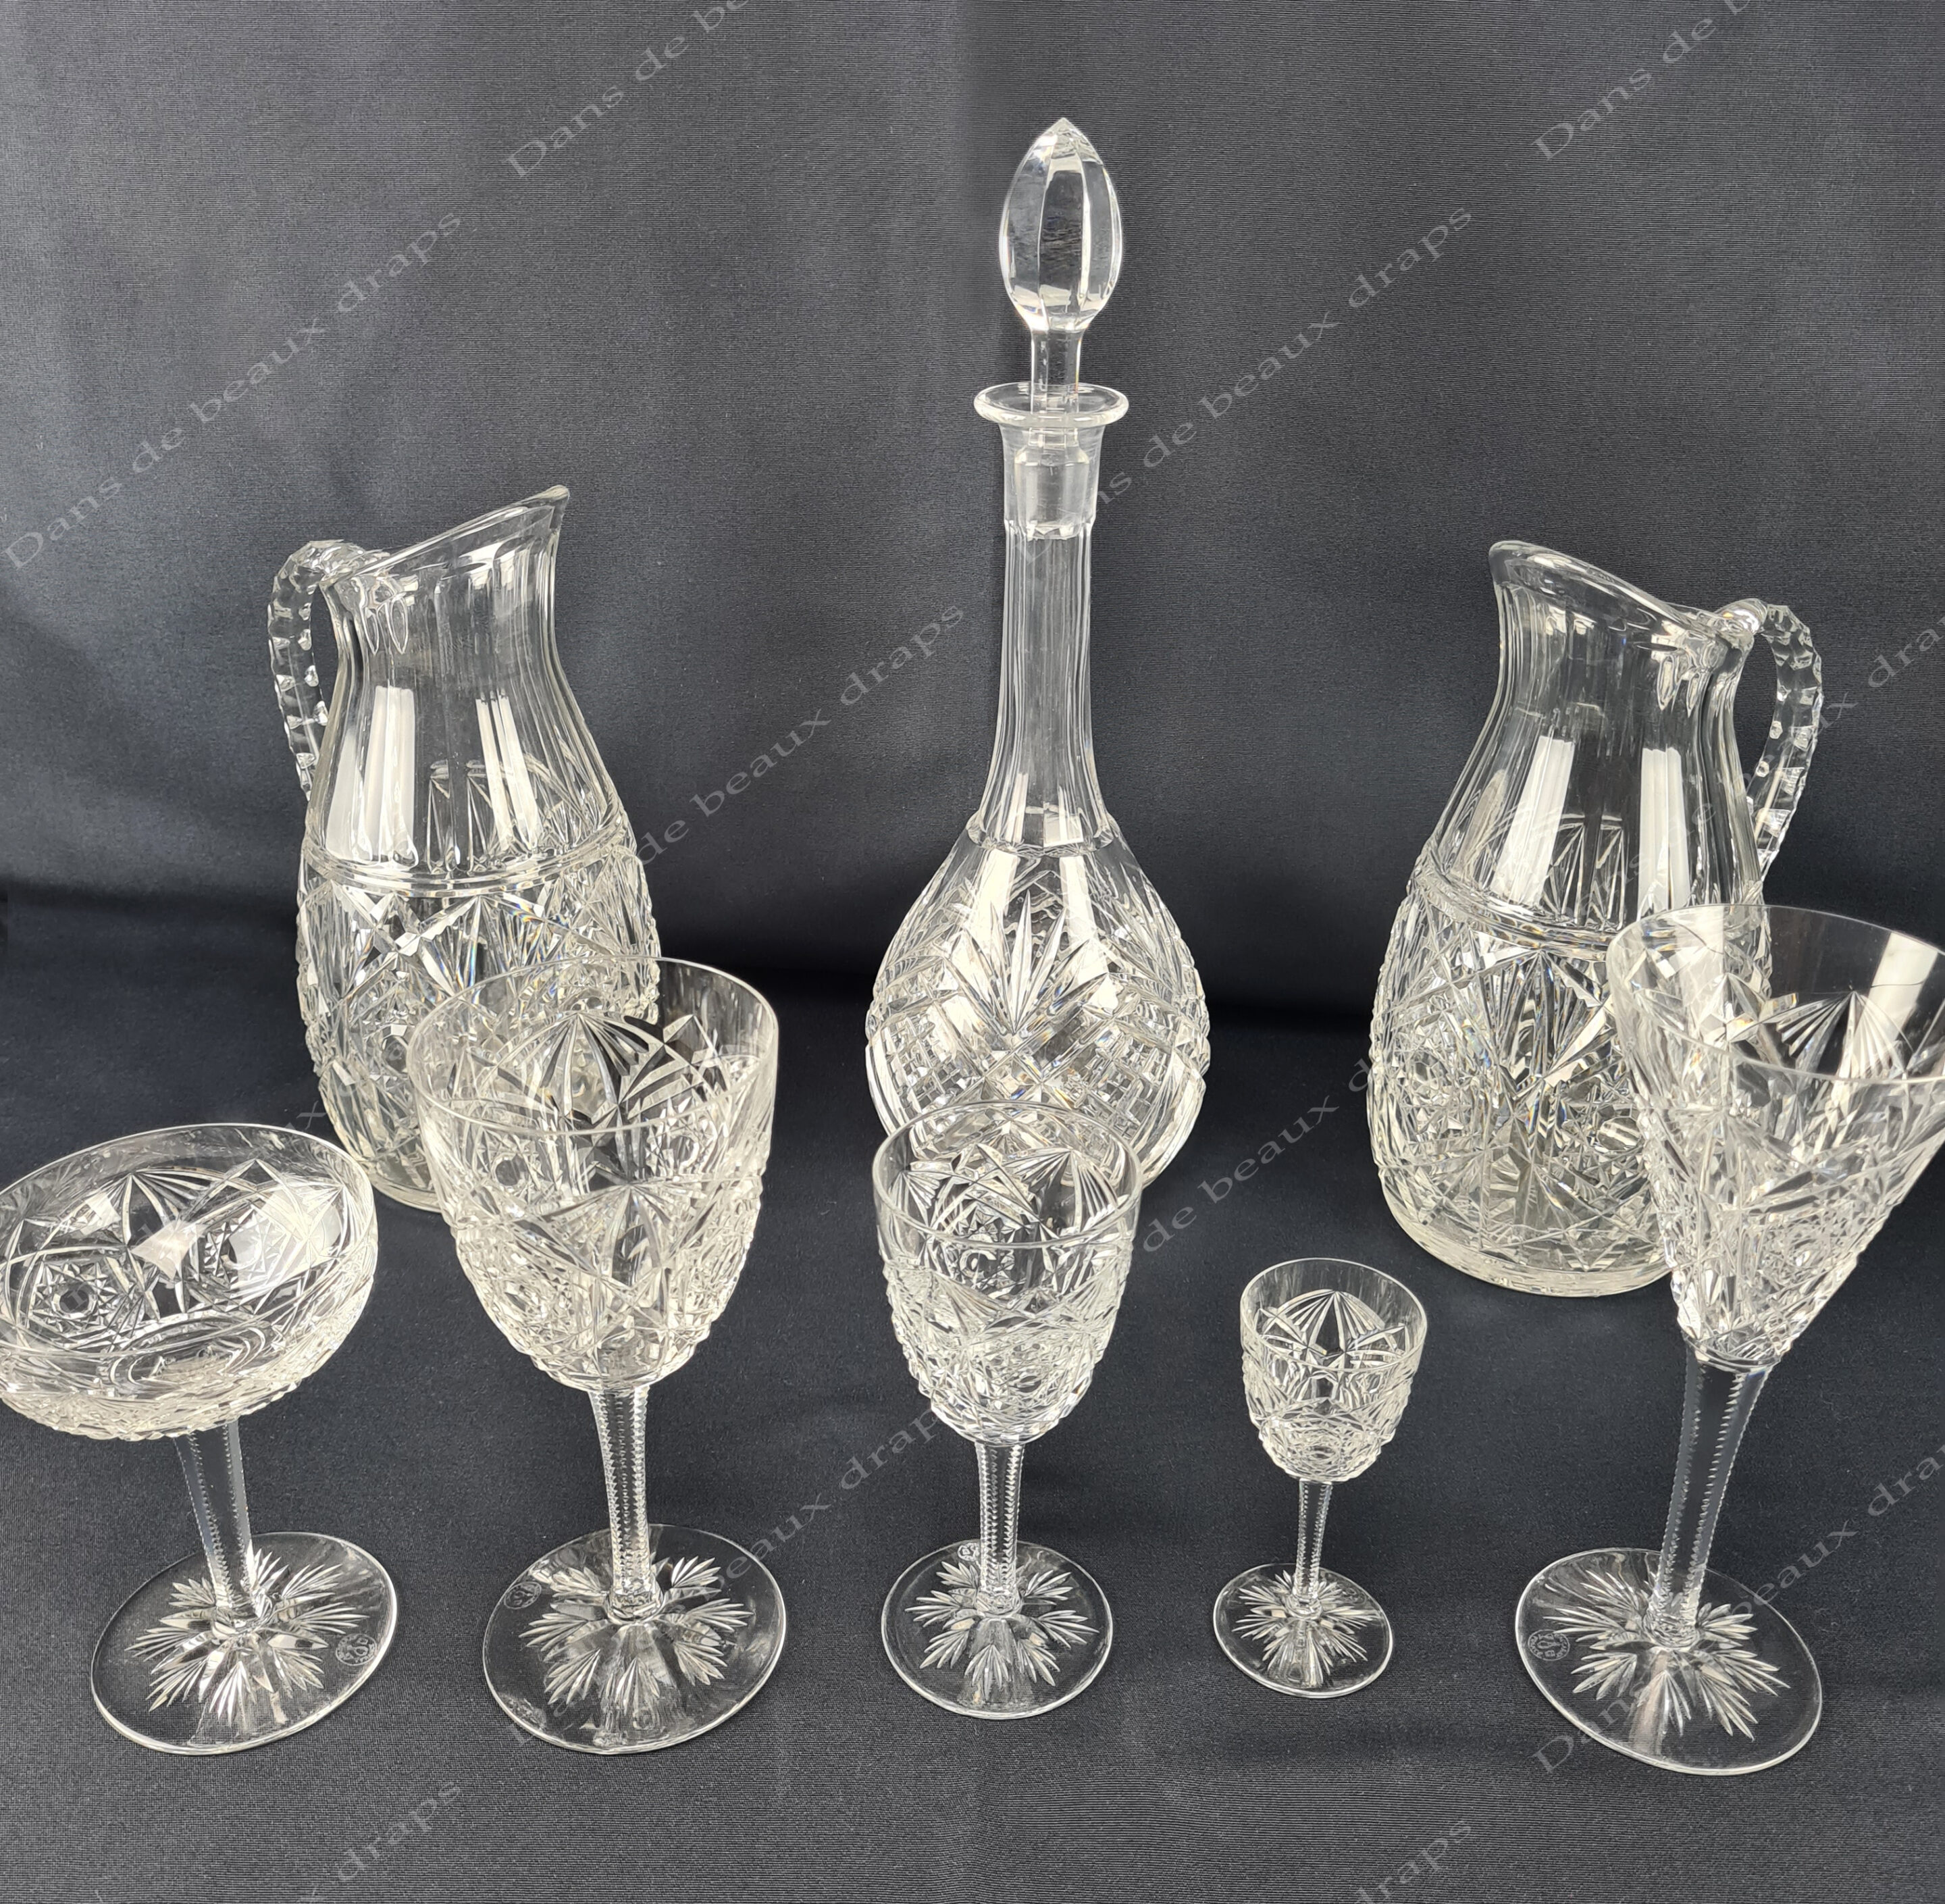 Magnifique service de verres en cristal de Baccarat modèle Lagny, 63  pièces. - Dans de beaux draps